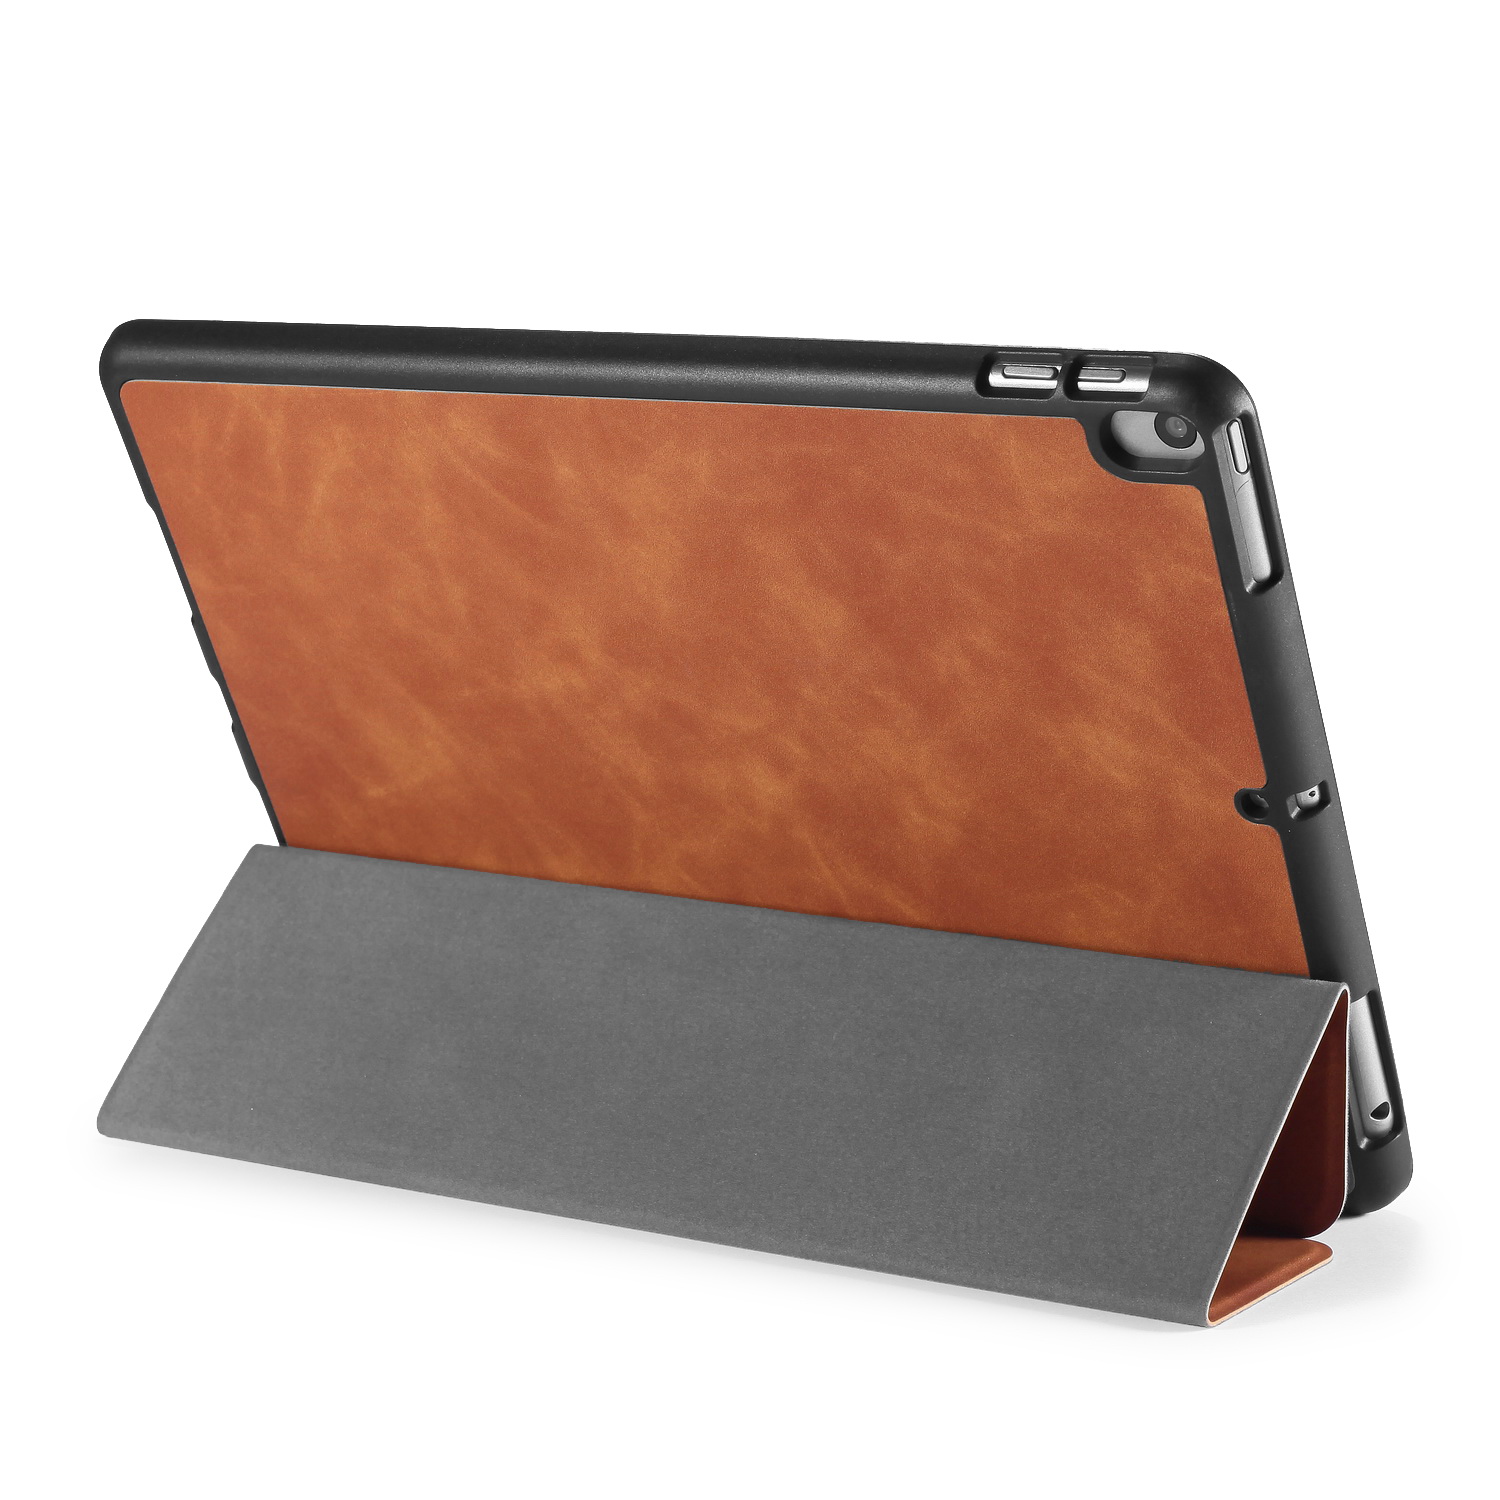 DG.MING Retro Style fodral till iPad Pro 10.5/iPad Air 3, brun